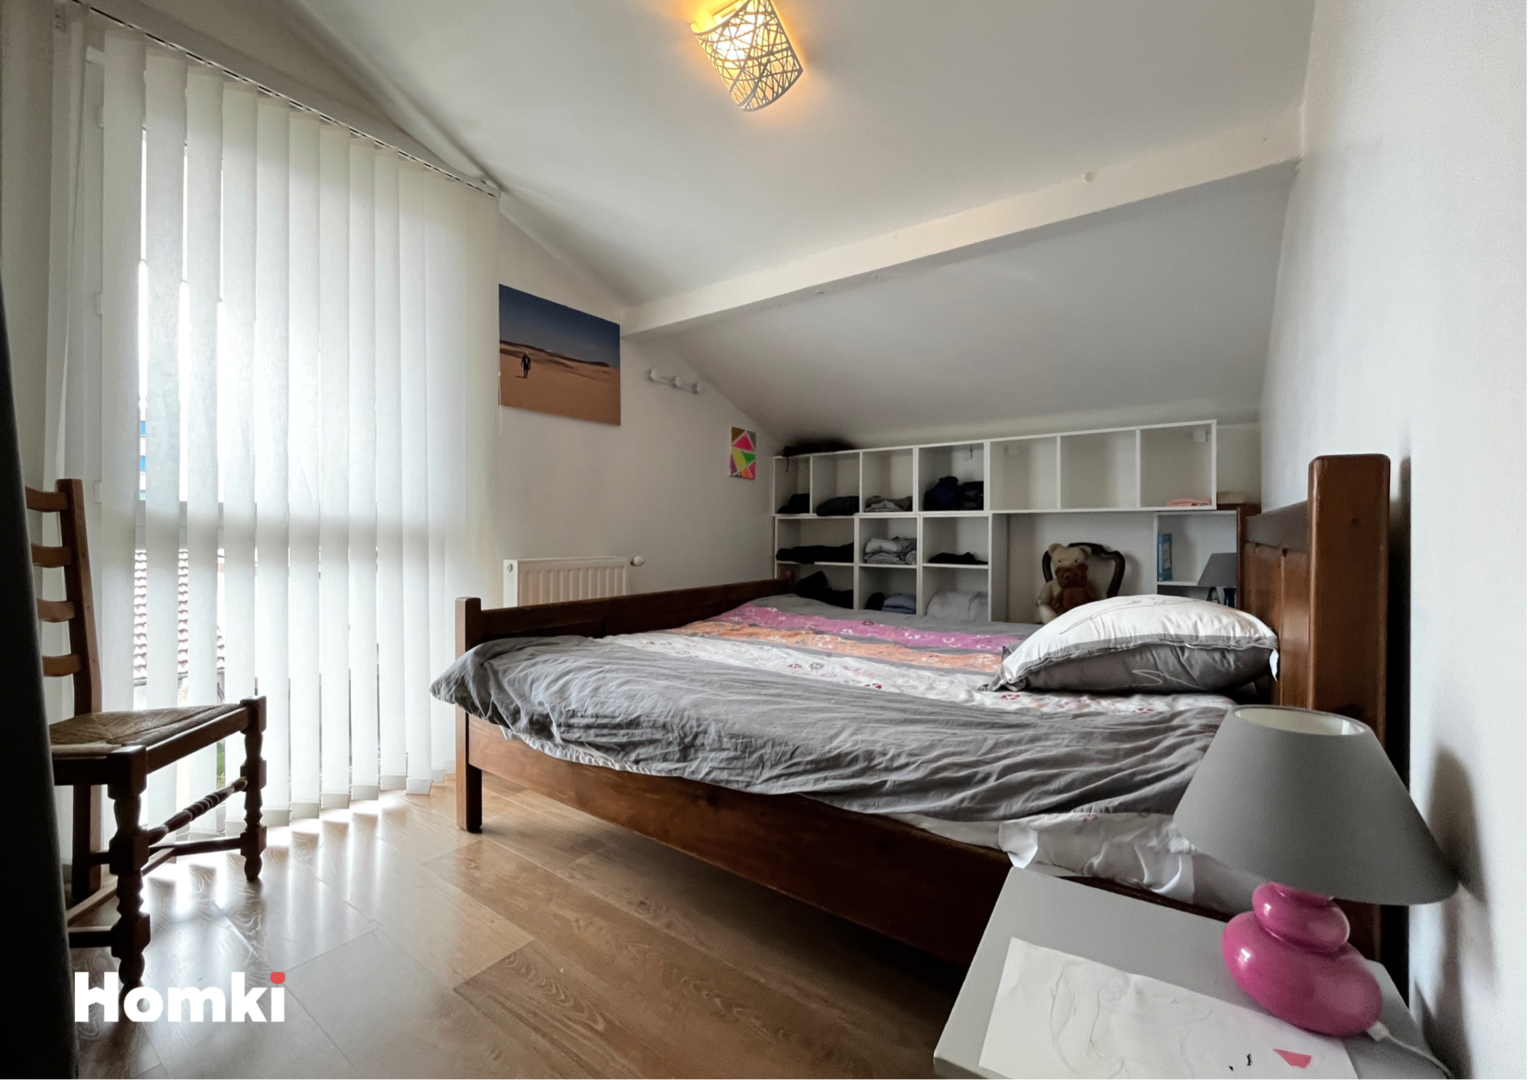 Homki - Vente Appartement  de 66.0 m² à Fontaine 38600